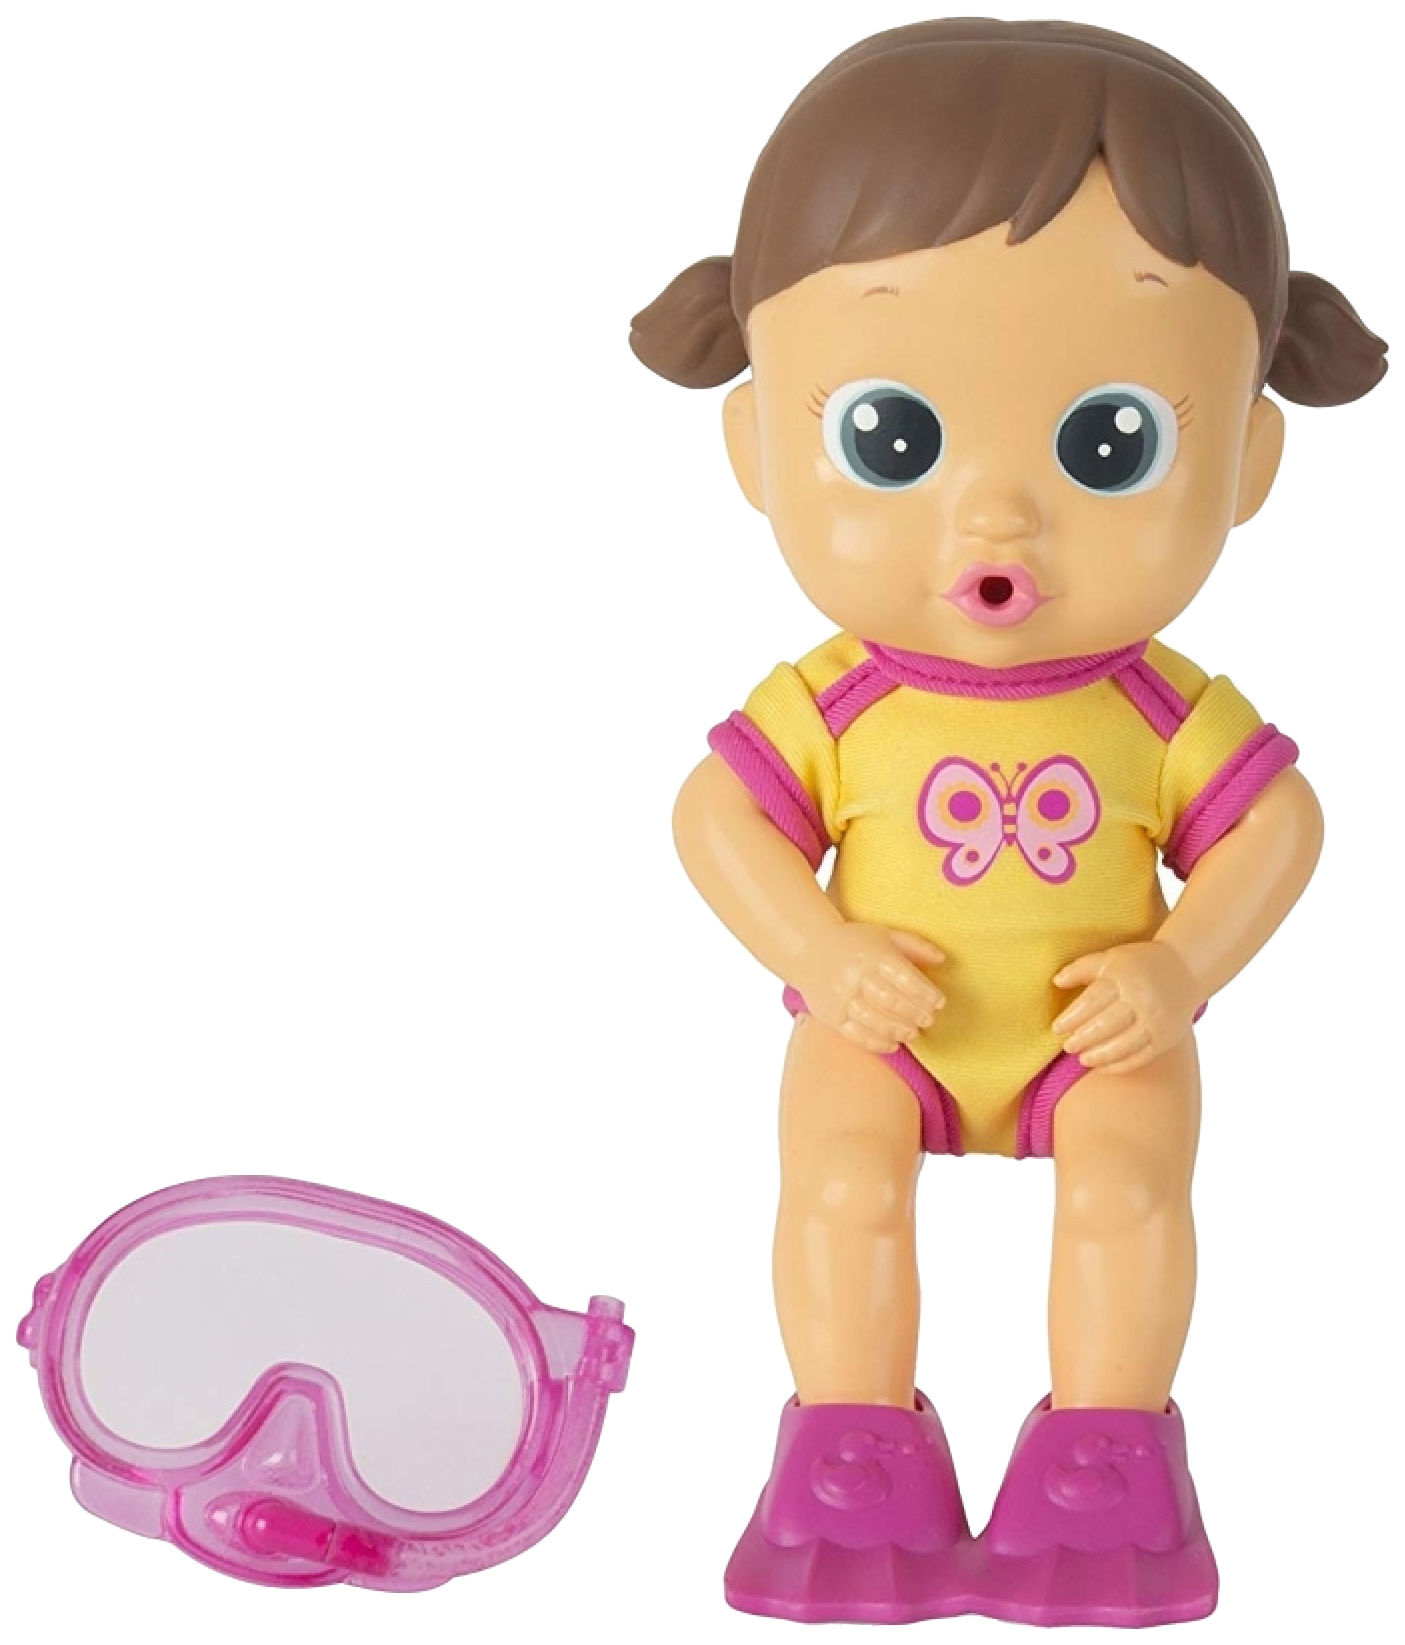 Кукла для купания Bloopies - Лавли, в открытой коробке, 24 см IMC toys кукла для купания bloopies луна в открытой коробке 24 см imc toys